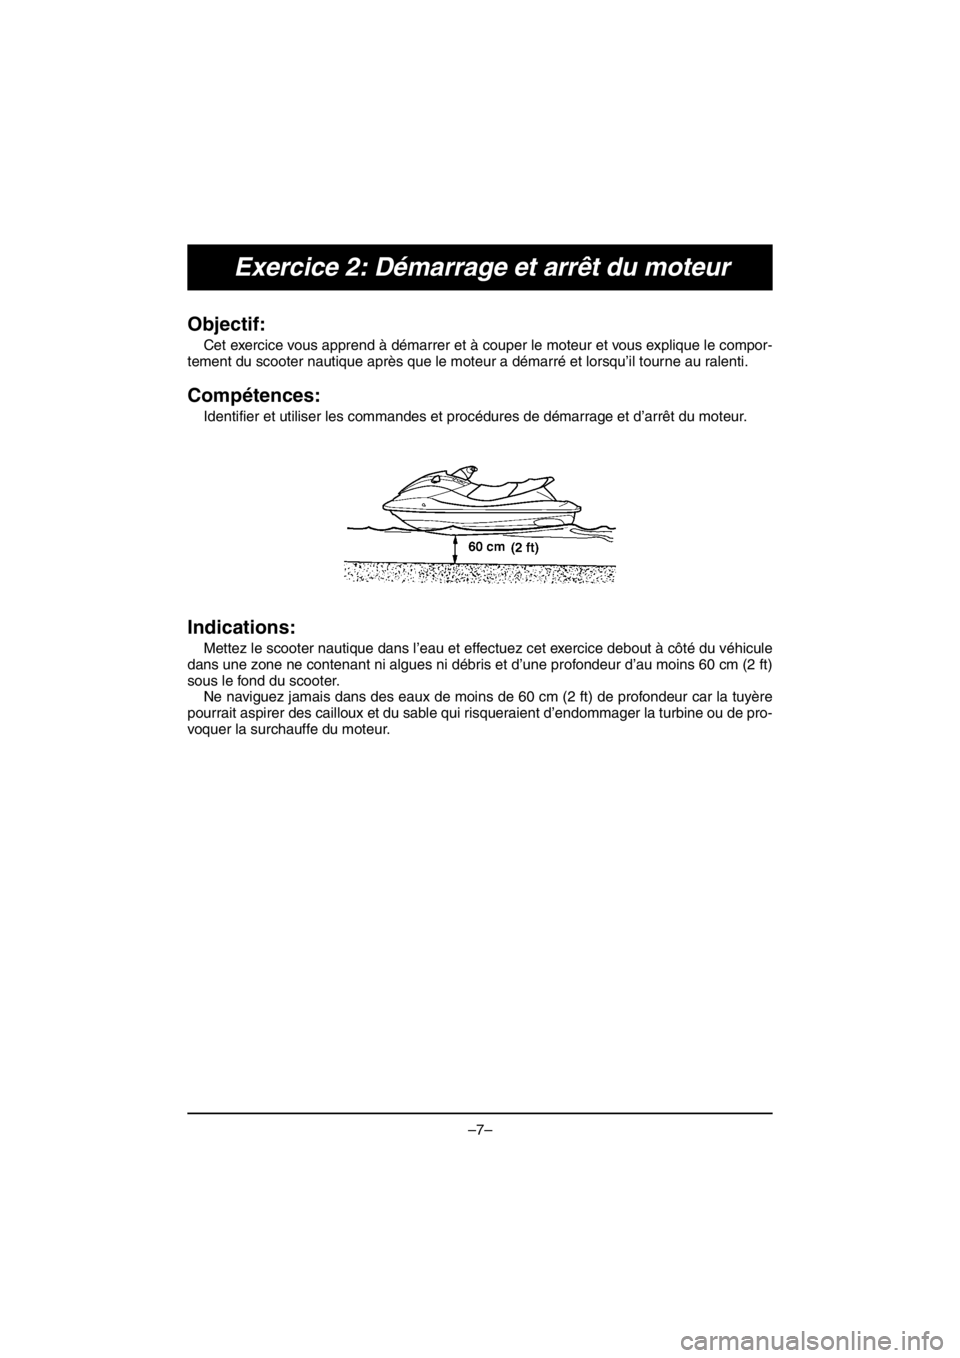 YAMAHA EX SPORT 2017  Manuale duso (in Italian) –7–
Exercice 2: Démarrage et arrêt du moteur
Objectif: 
Cet exercice vous apprend à démarrer et à couper le moteur et vous explique le compor-
tement du scooter nautique après que le moteur 